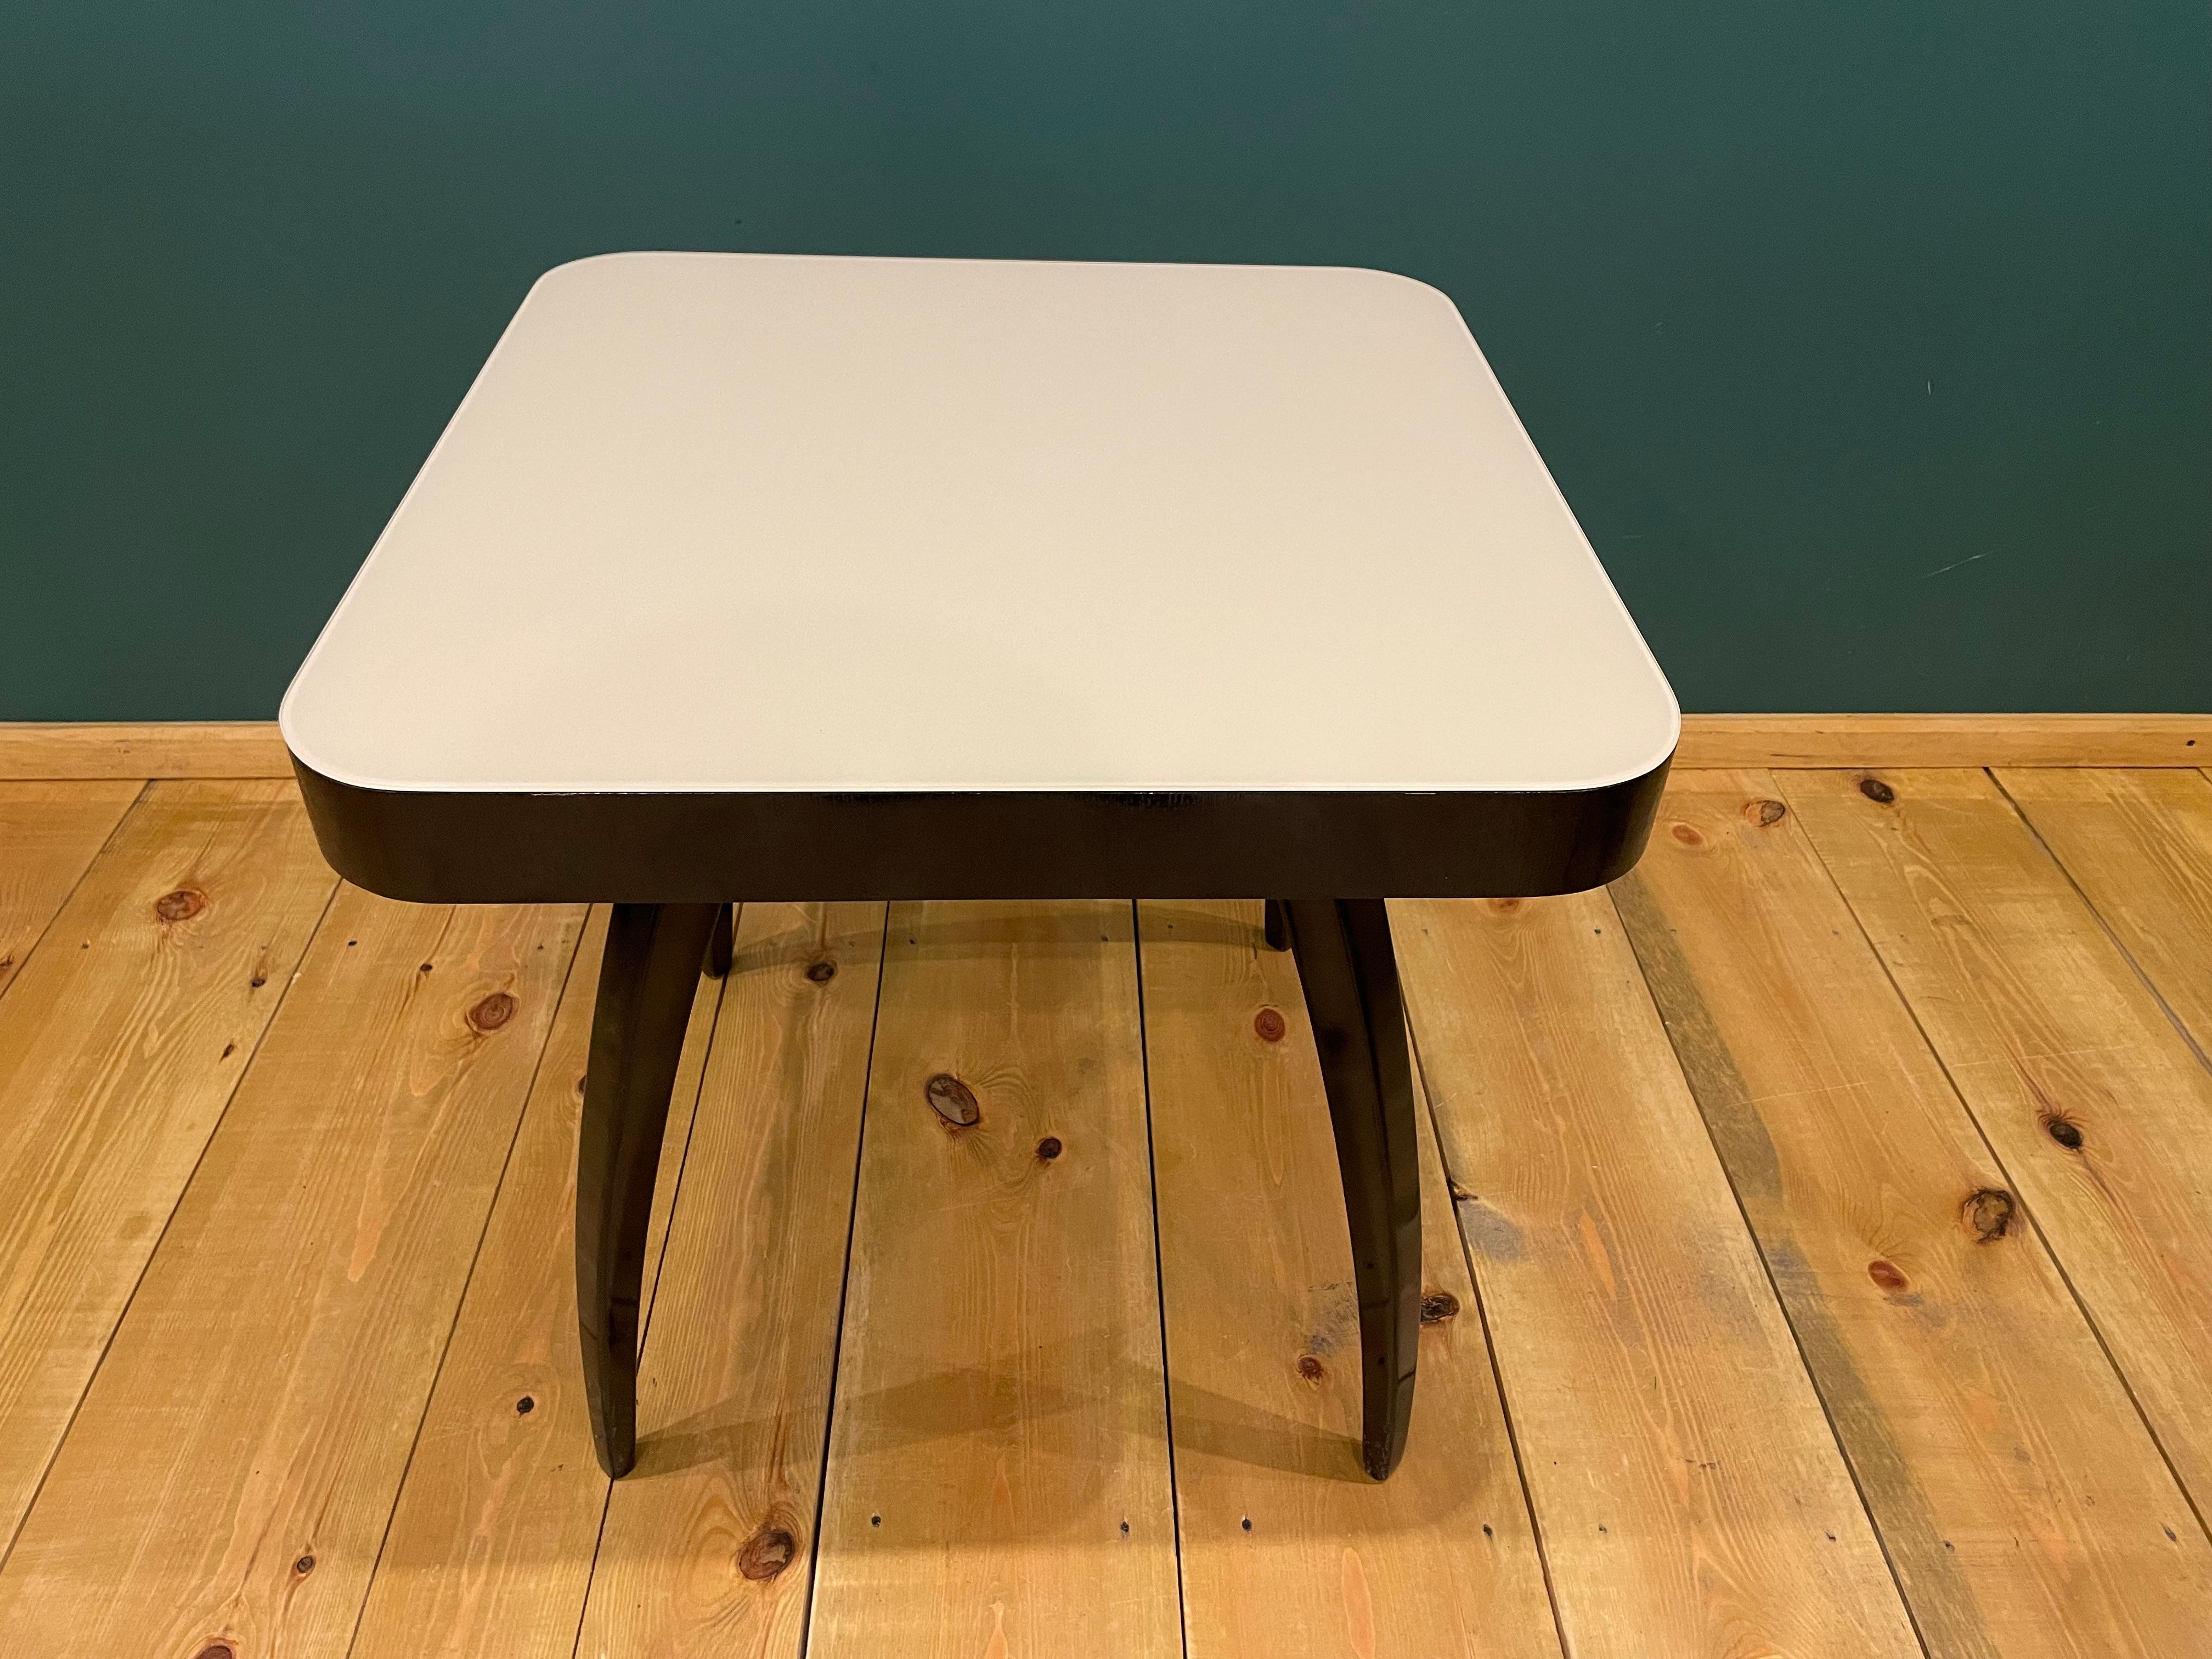 Art Deco Tisch von J. Halabala aus den 1960er Jahren.
Das Möbelstück wurde aus Nussbaumholz gefertigt.
Art-Déco-Tisch des berühmten tschechischen Designers J. Halabala, 1950. Jindrich Halabala - (ein tschechischer Designer, der zu den bedeutendsten